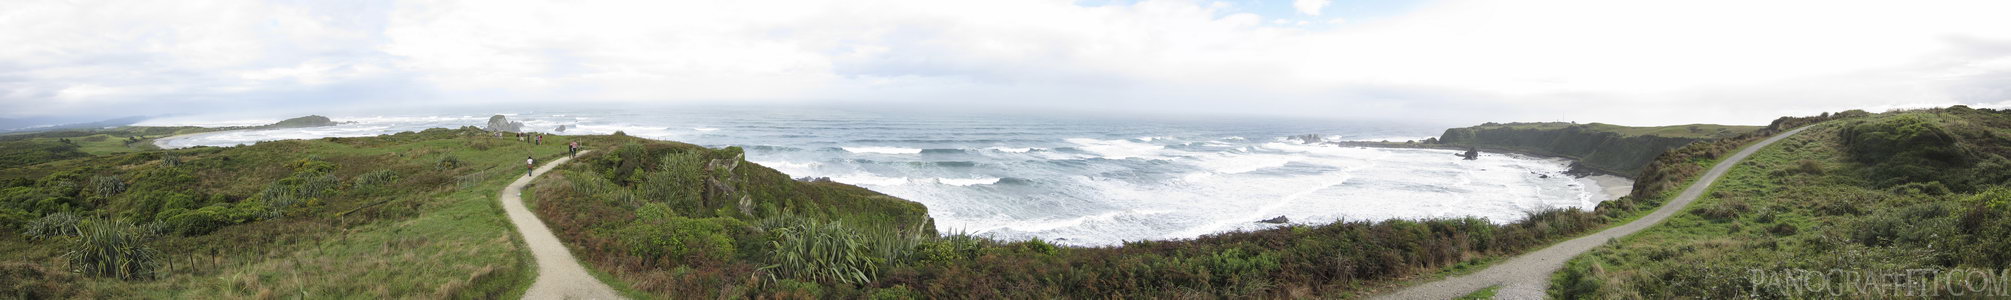 Cape Foulwind Coast - Punakaiki, West Coast, New Zealand